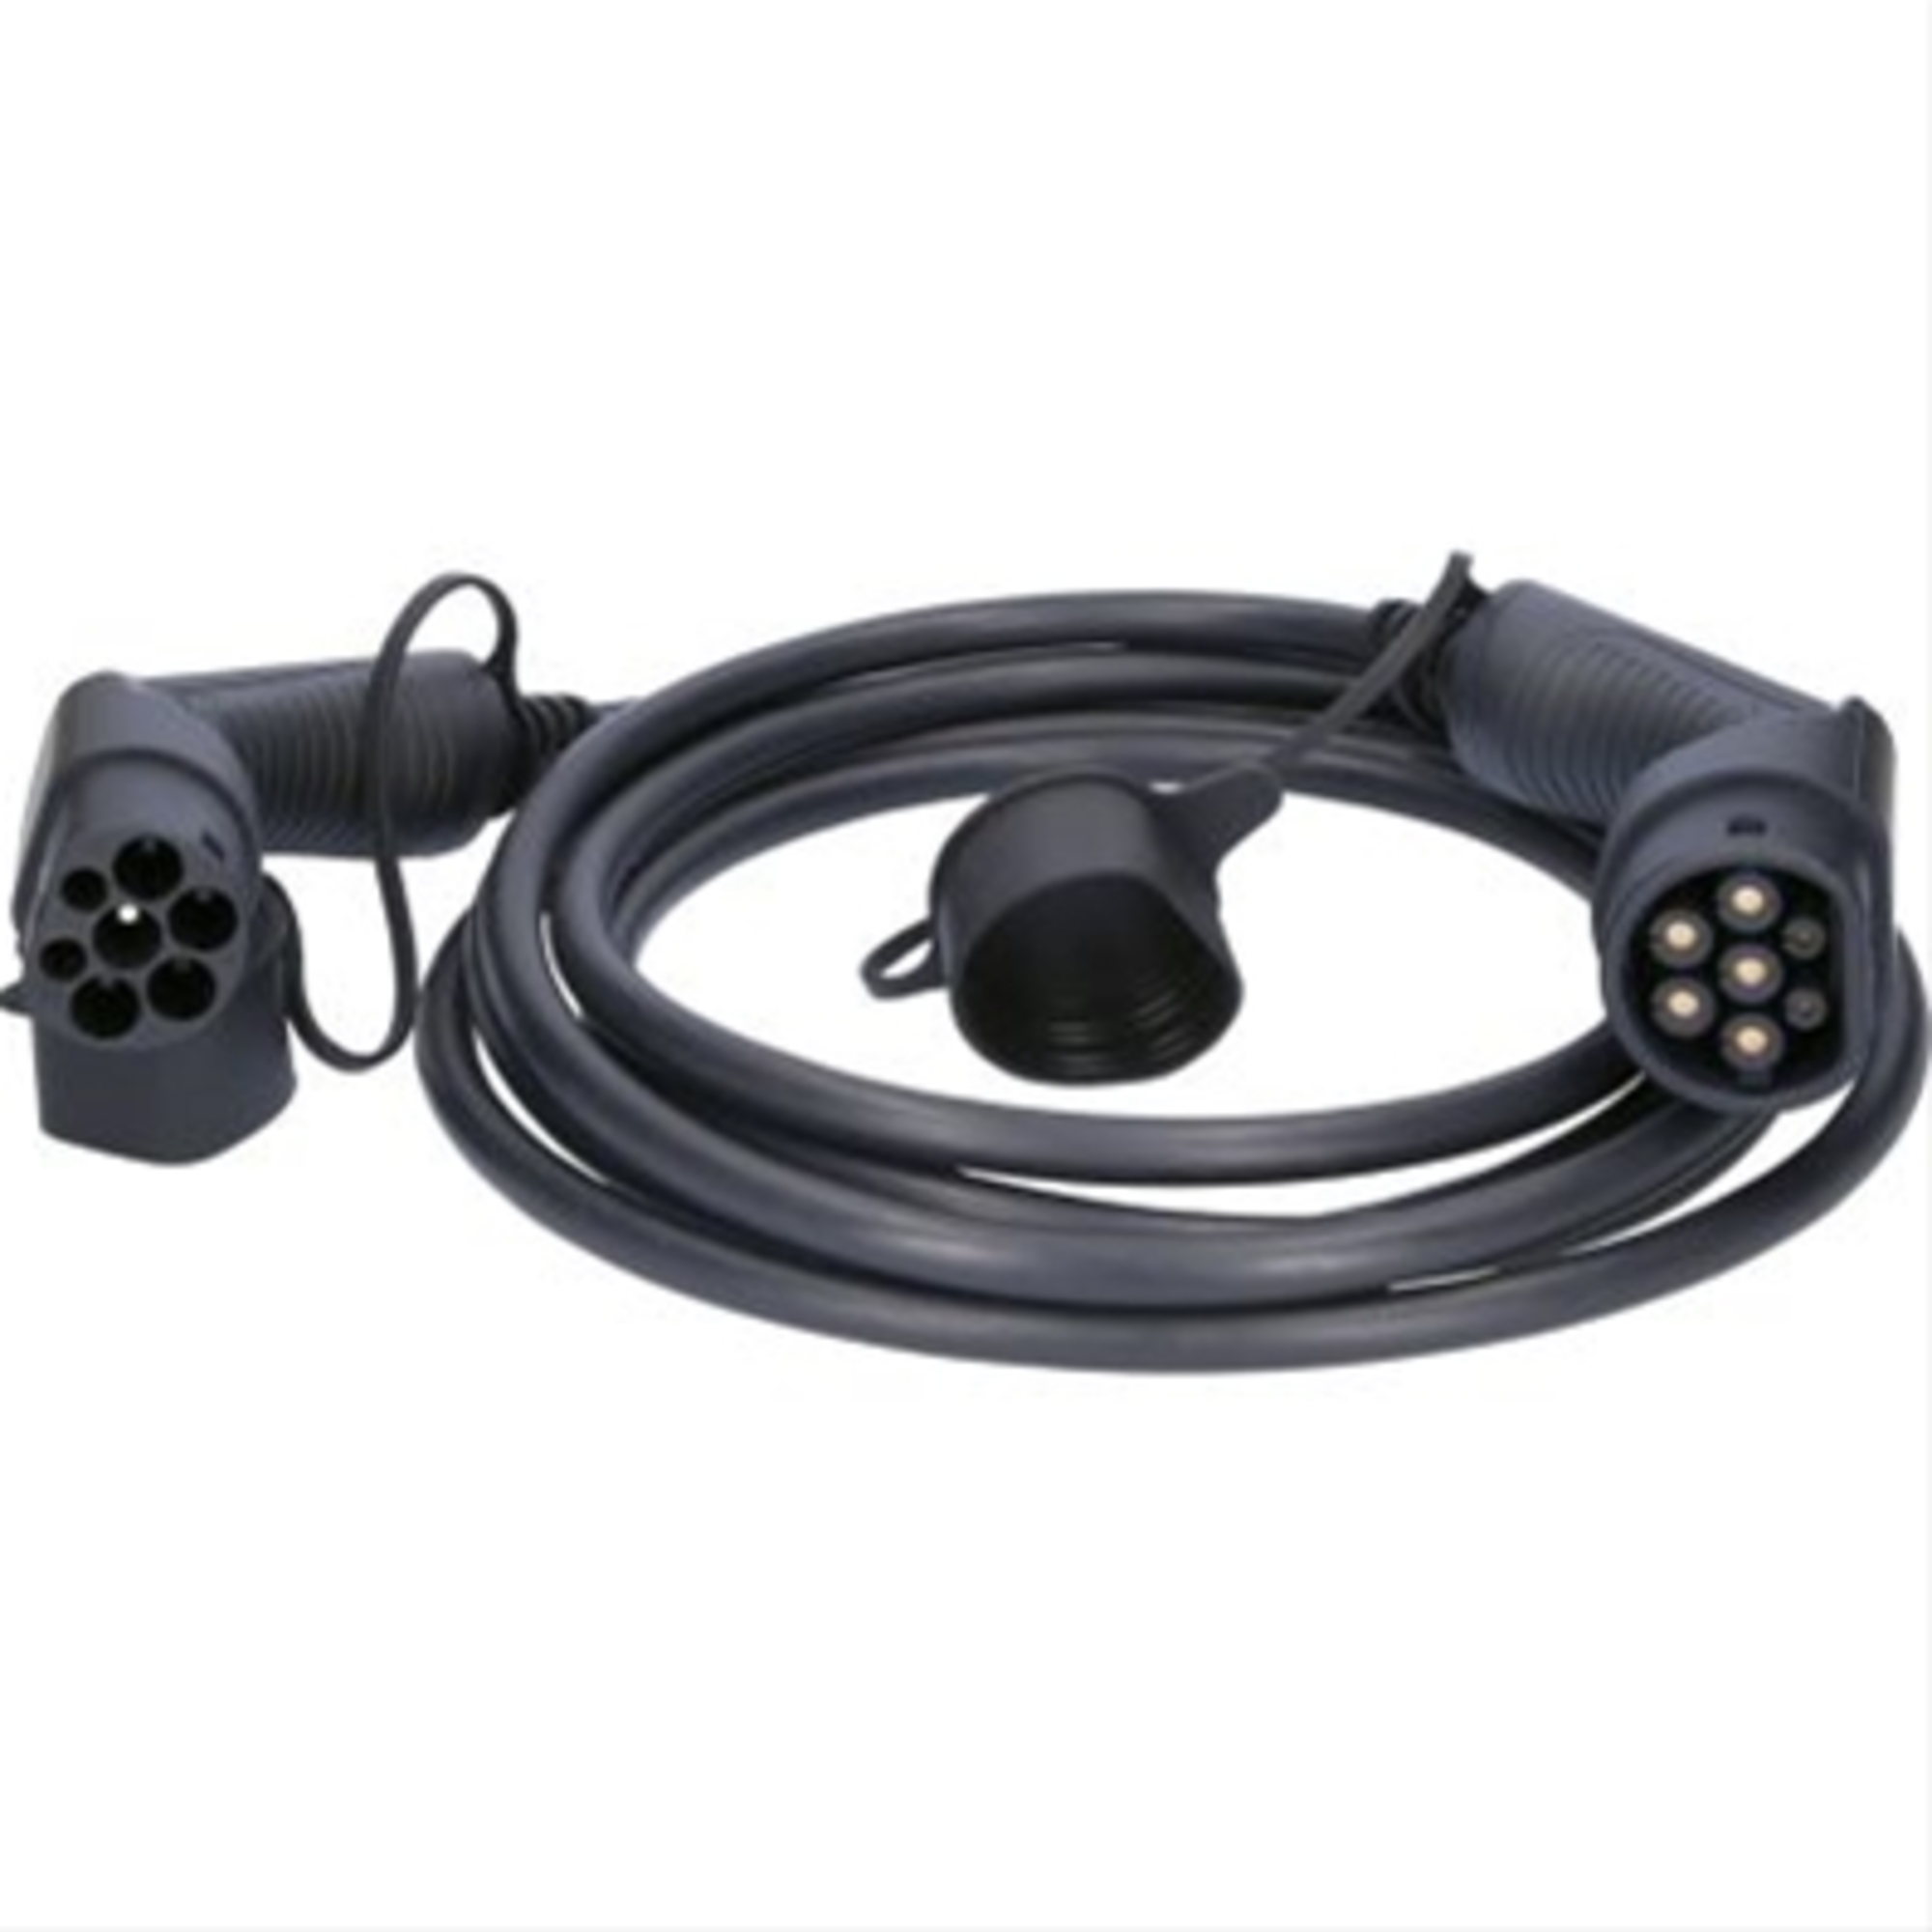 Cablu de incarcare drept typ 2 / typ 2 11 kw 400 v 16 a 5m-efuturo ks-tools